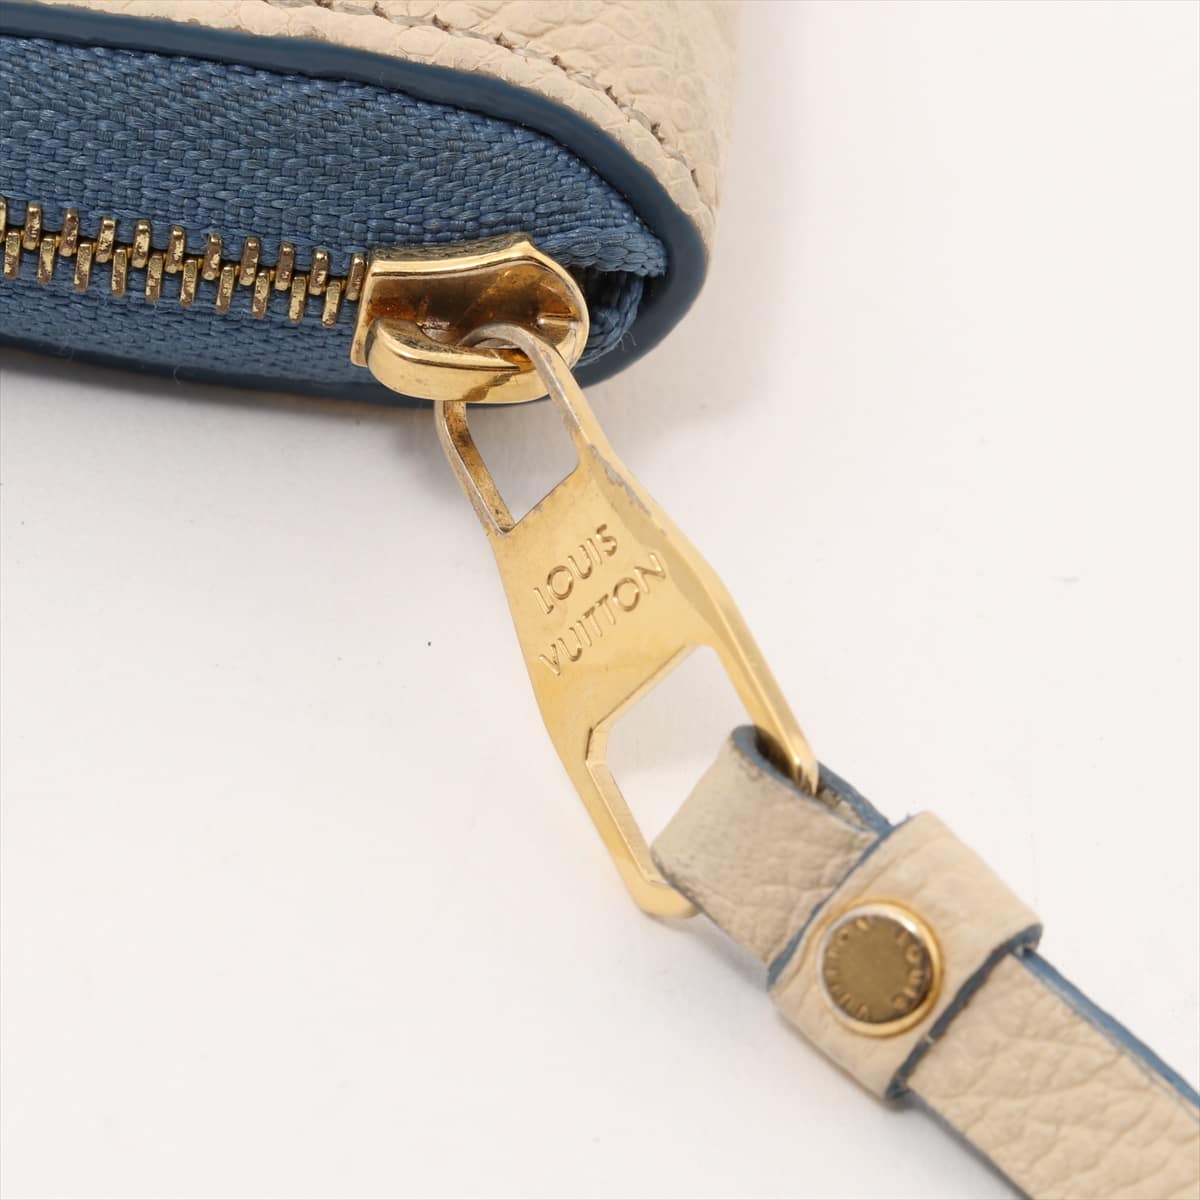 Louis Vuitton Empreinte Zippy Coin Purse M63928 Blue Jean Claim TS4156